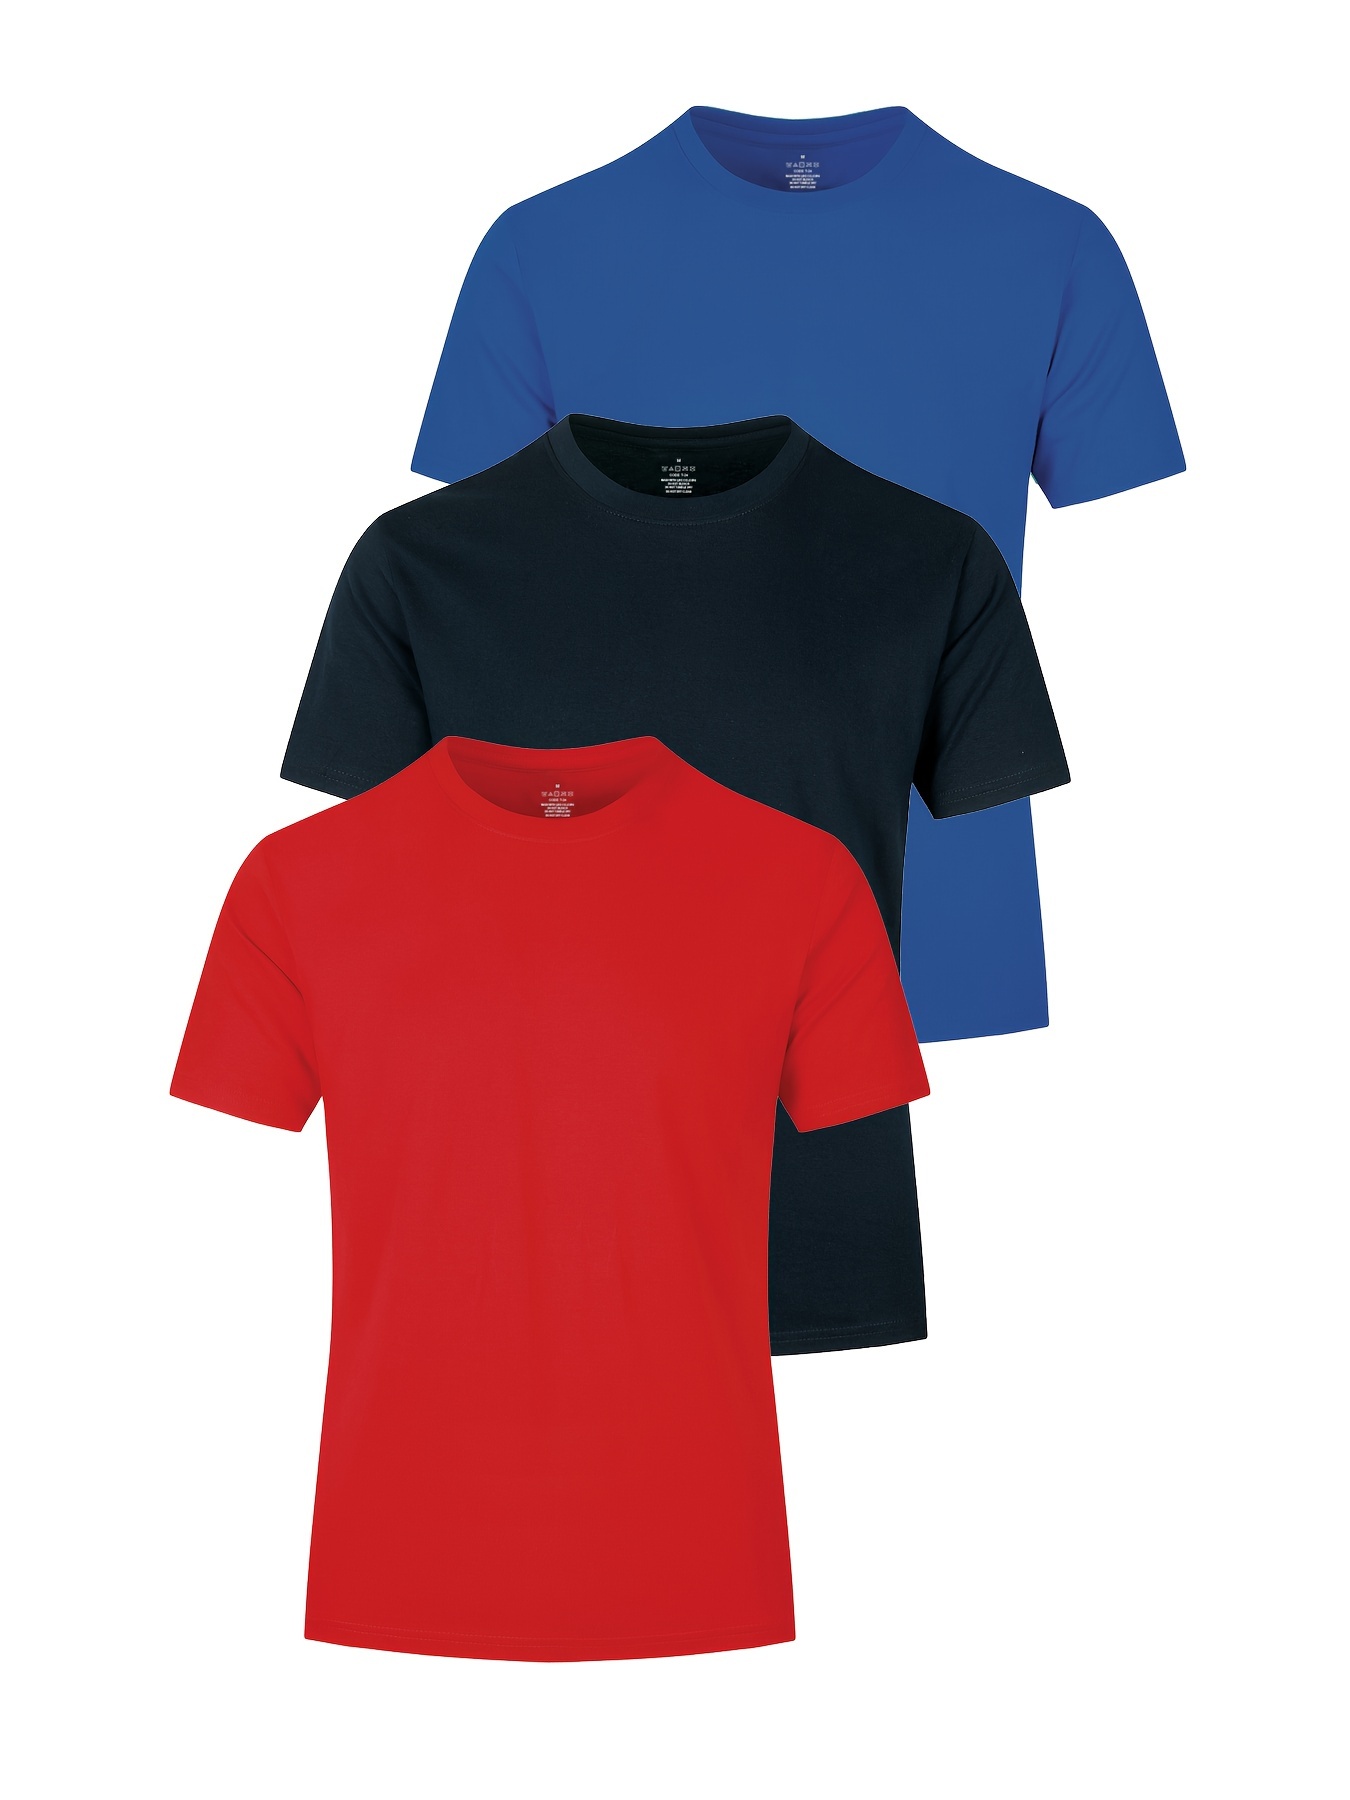  Camiseta básica para hombre, varios colores, tallas XS